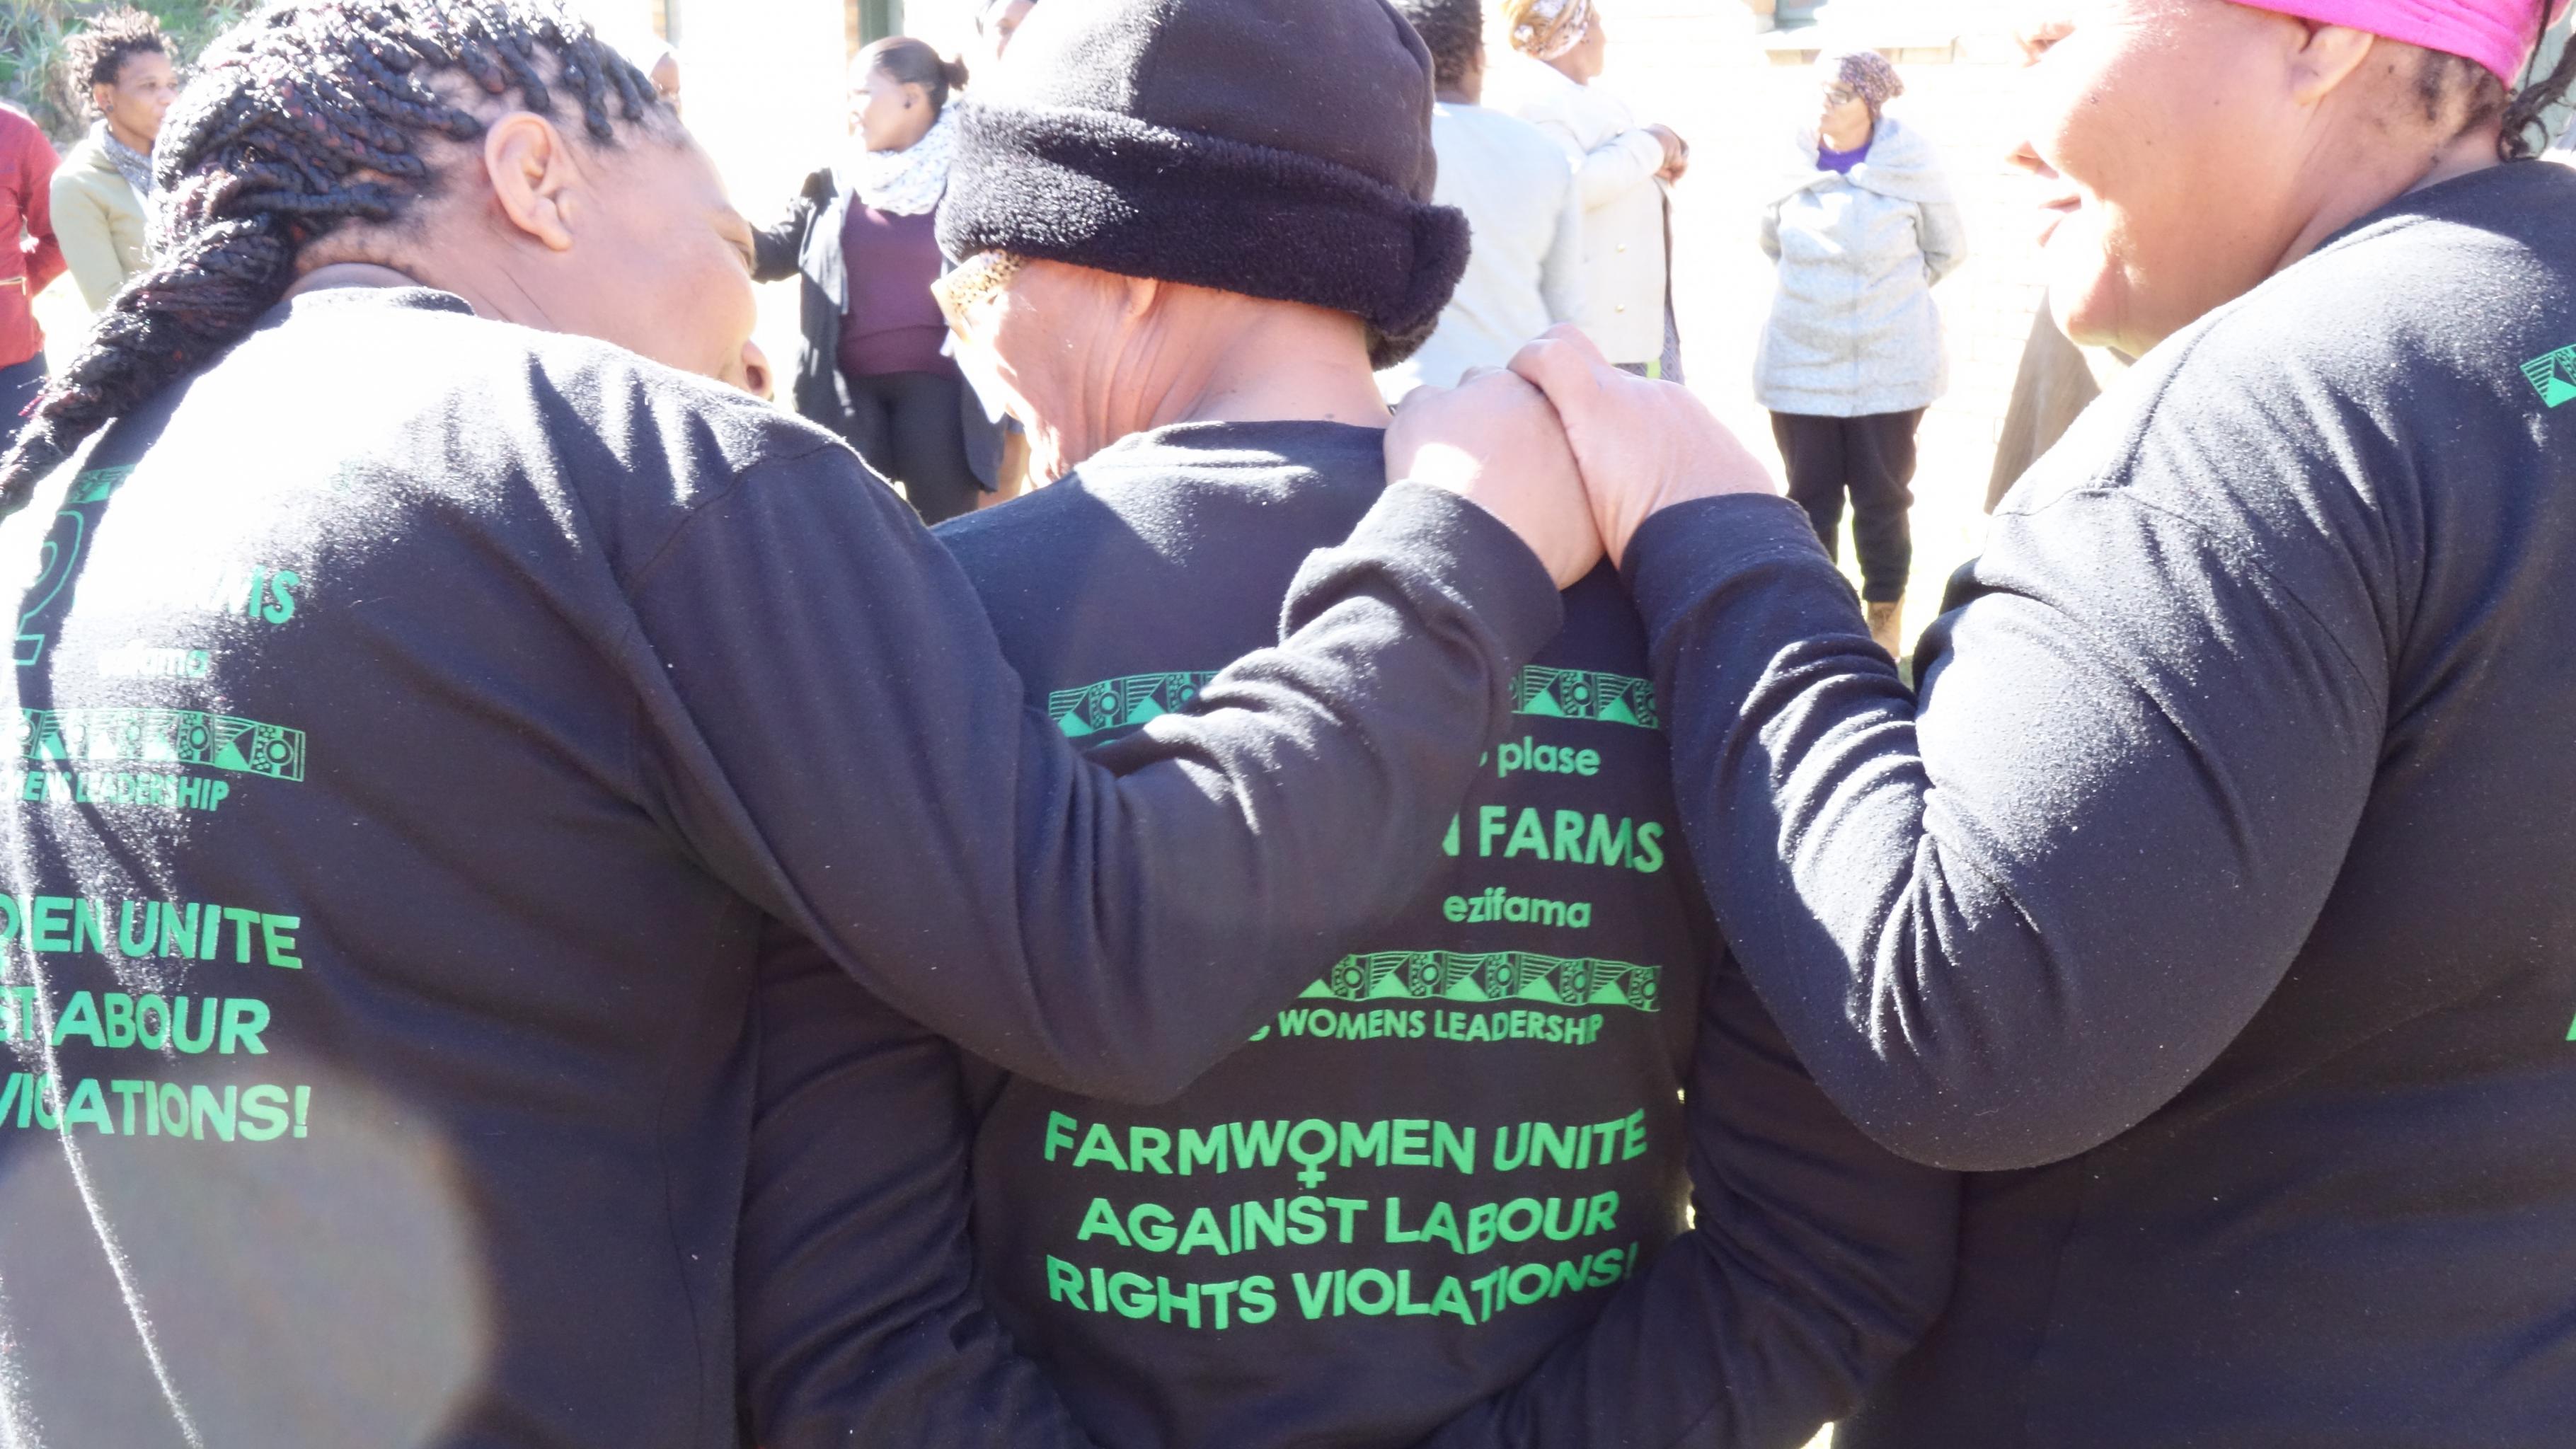 Drei Frauen stehen nebeneinander, die Hände auf die Schultern gelegt. Auf ihren Pullovern steht: „Farmwomen unite against labour rights violations!“